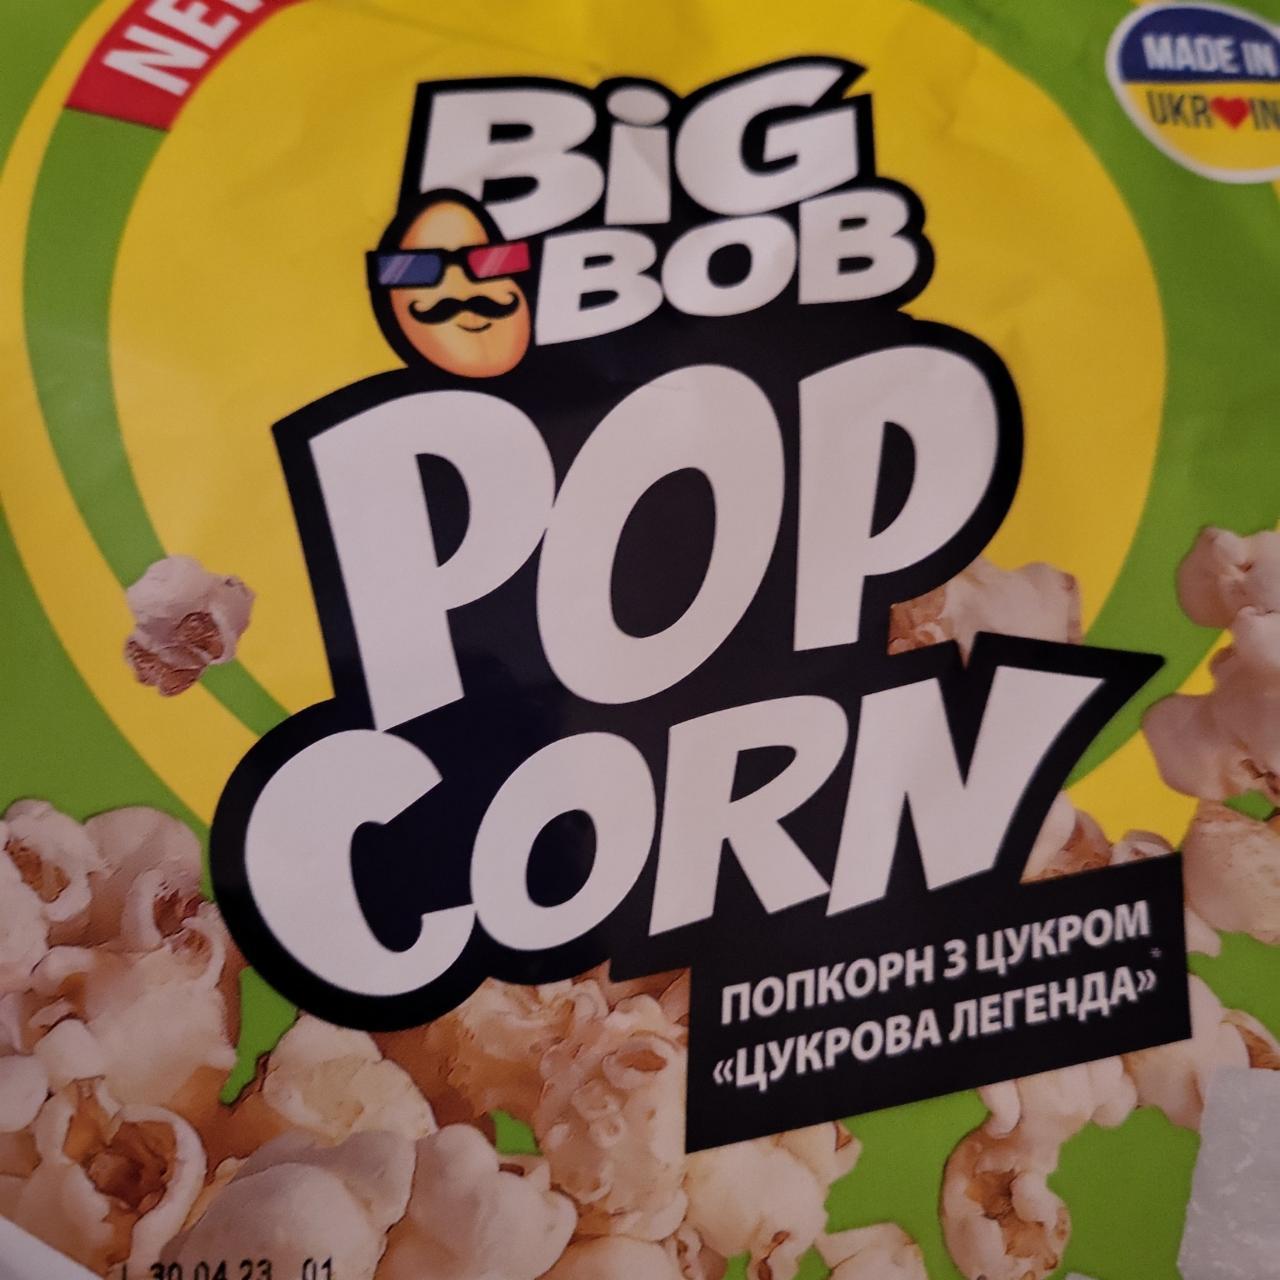 Фото - Попкорн з цукром Цукрова легенда Big Bob